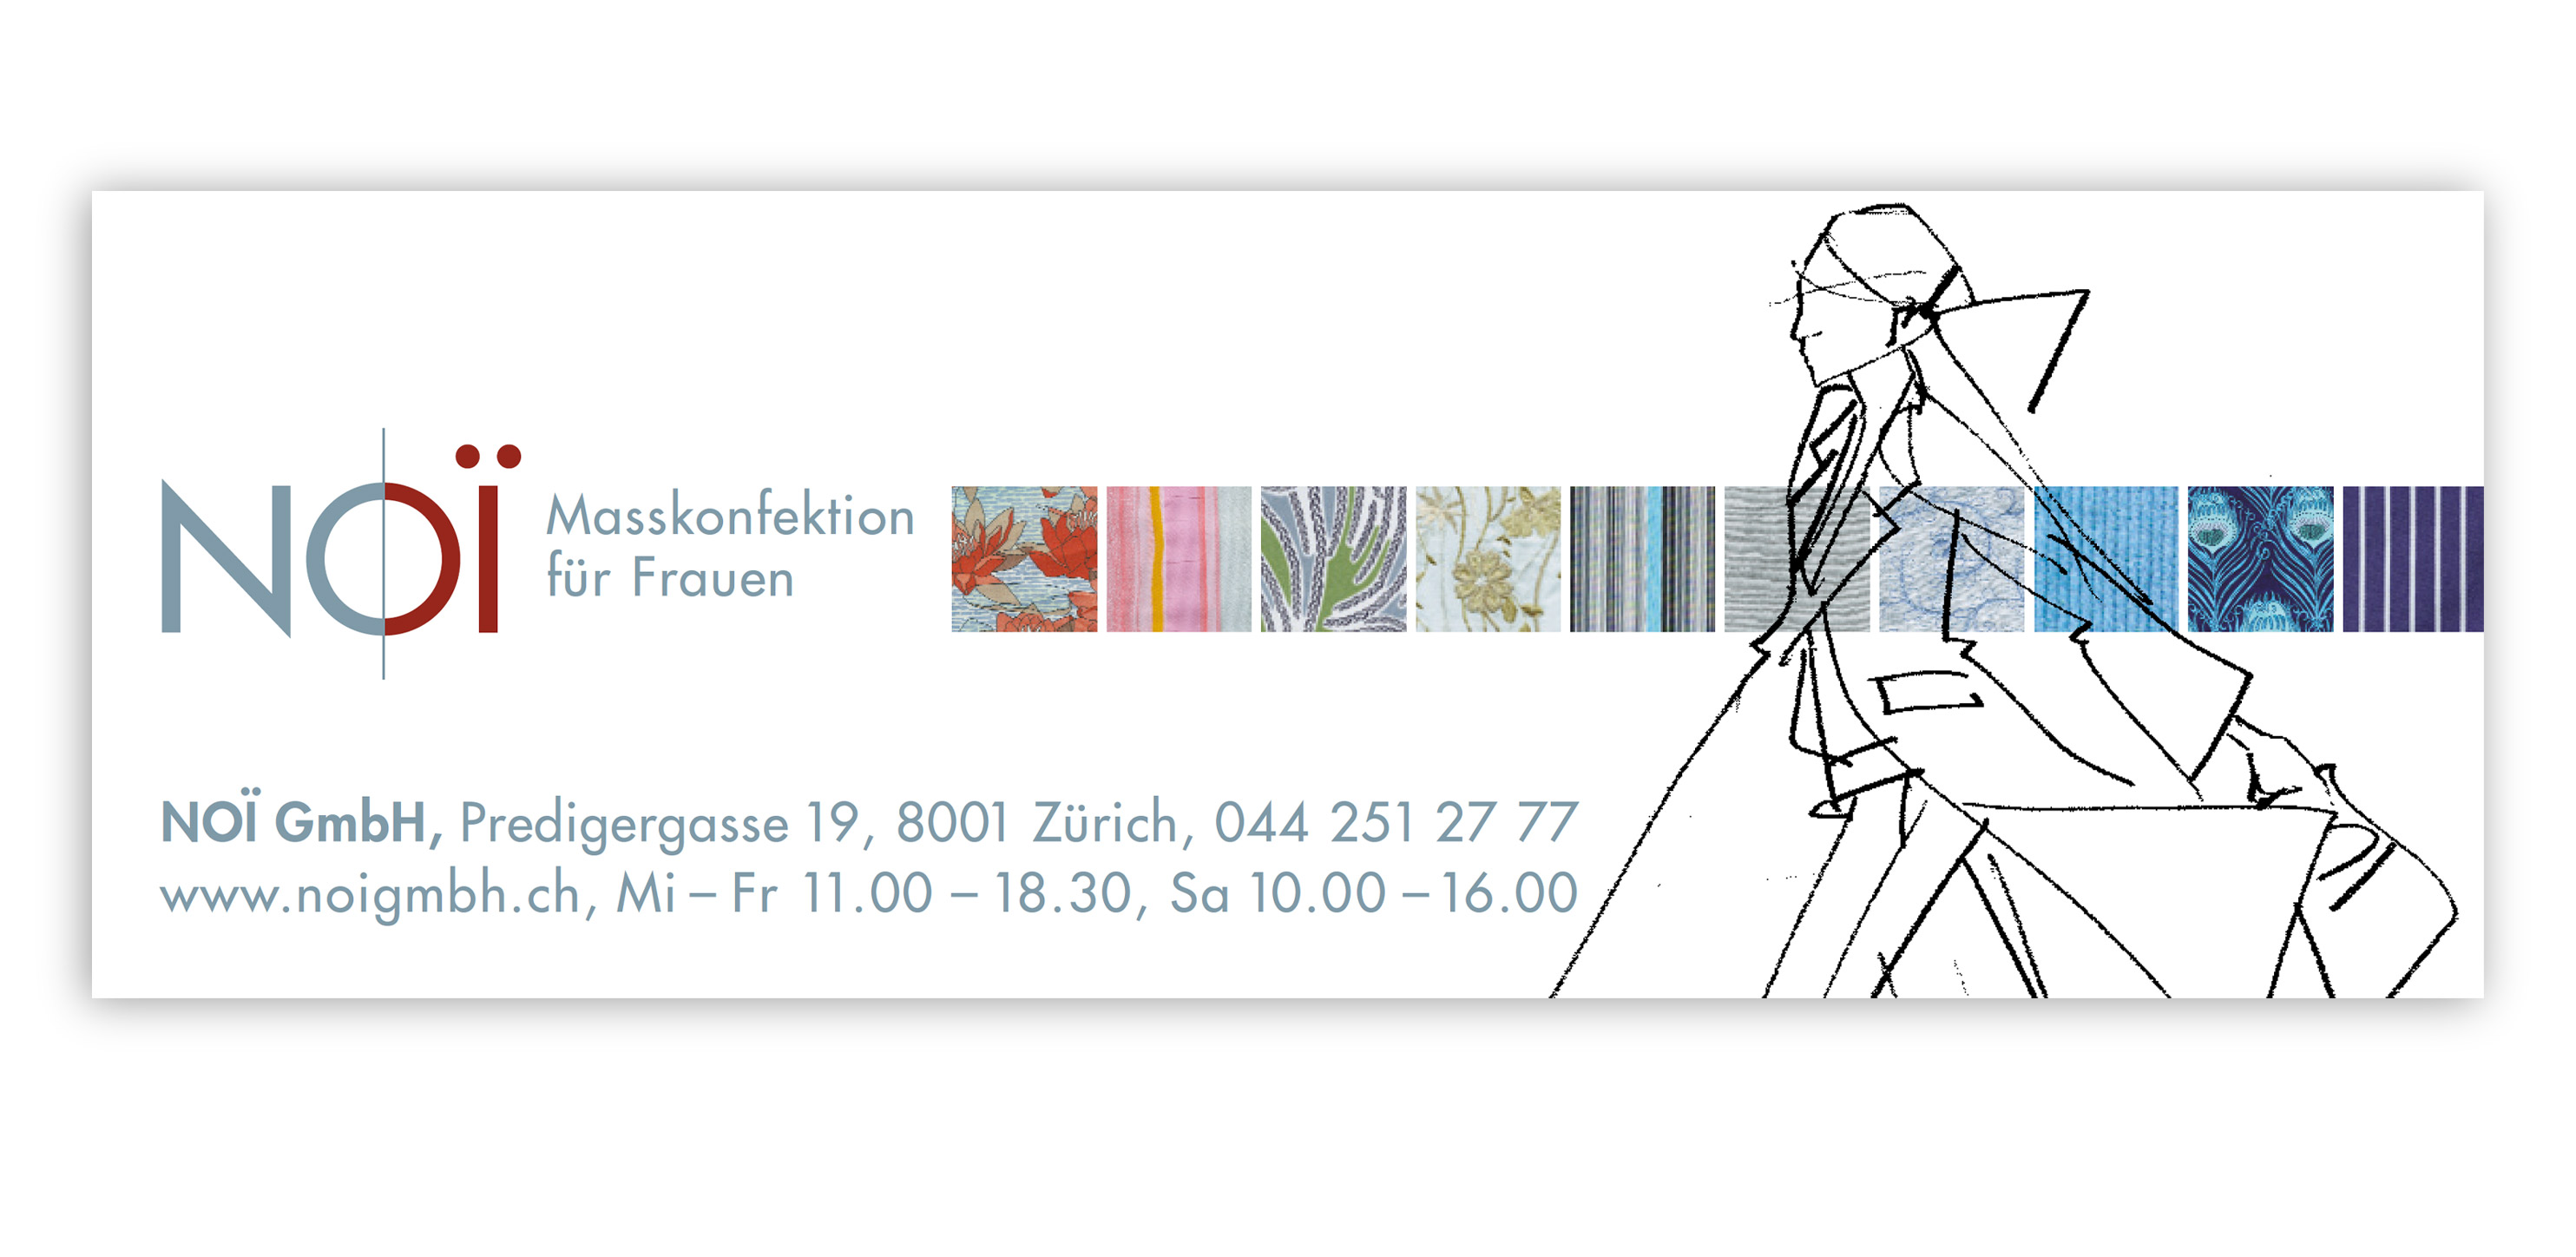 Inserate, Noï Masskonfektion für Frauen - Atelier Leuthold, Visuelle Kommunikation, Grafik Design, Zürich